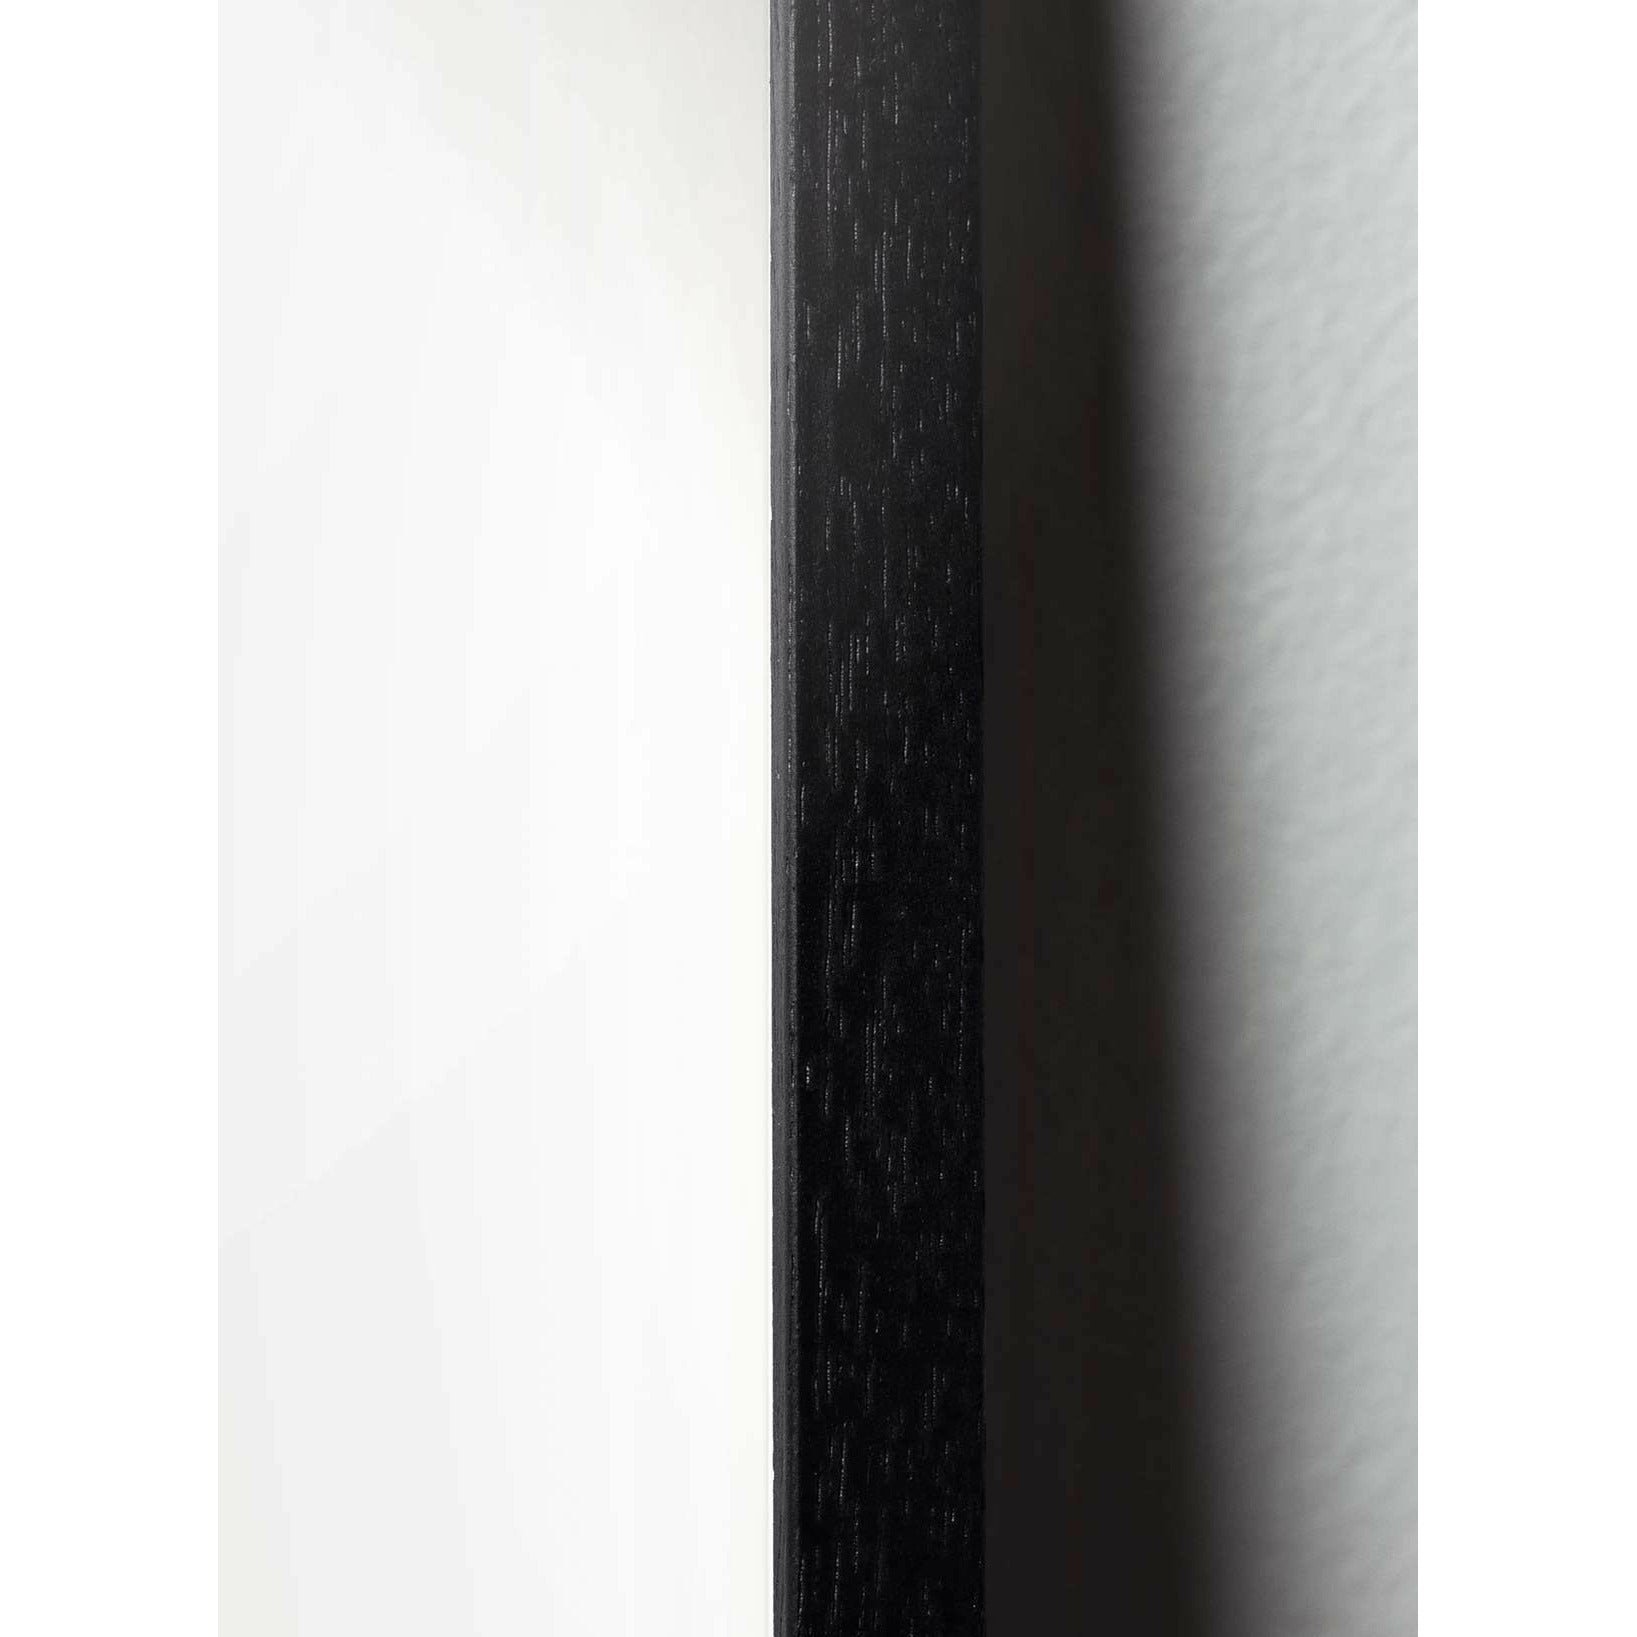 Poster di linea formica da un'ant, cornice in legno laccato nero A5, sfondo bianco